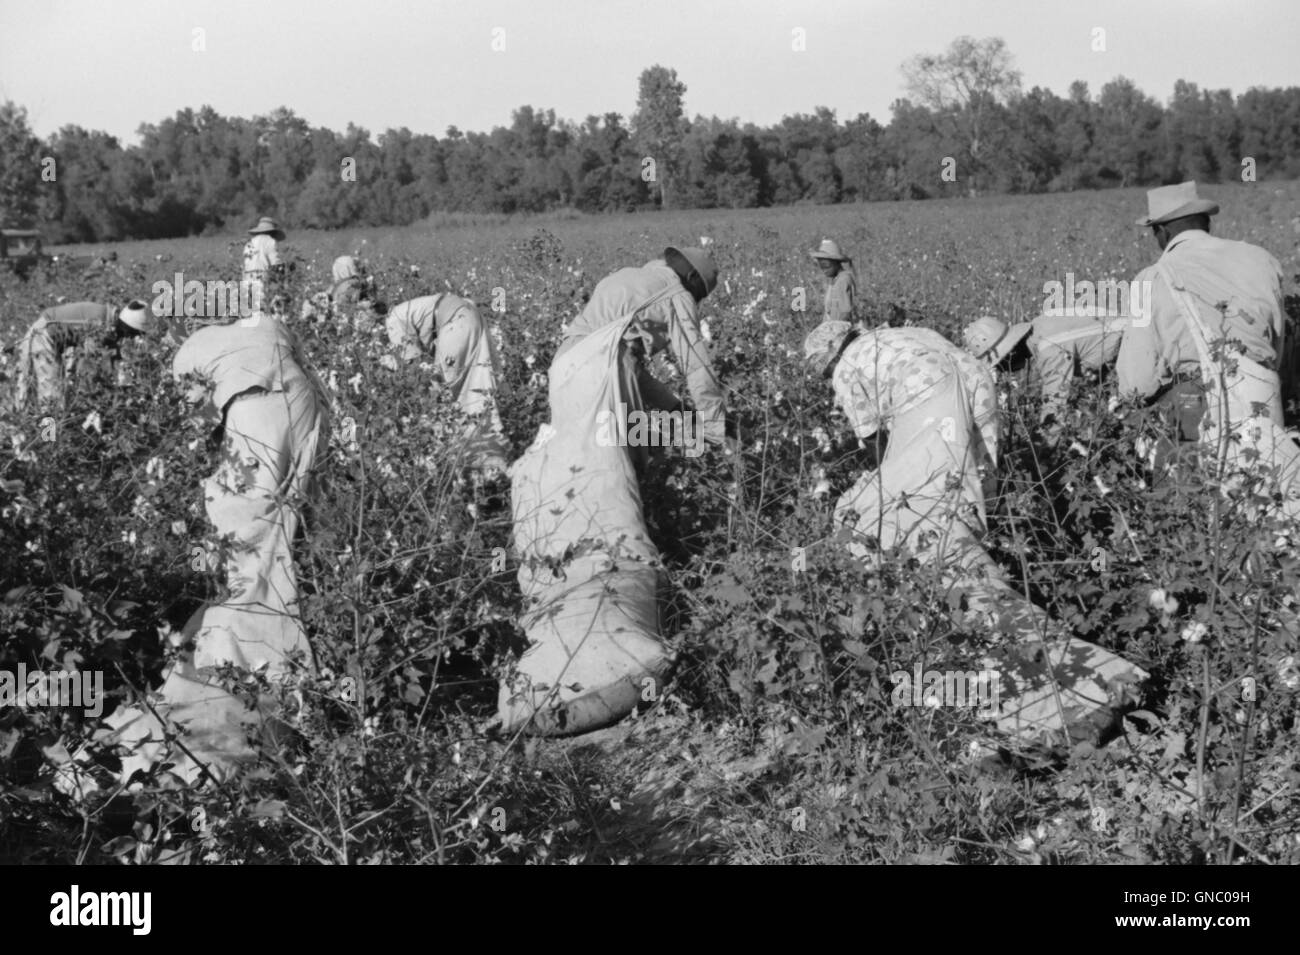 Cueillette de journaliers, Marcella Coton Plantation, Mileston, Mississippi, USA, Marion Post Wolcott pour Farm Security Administration, Octobre 1939 Banque D'Images